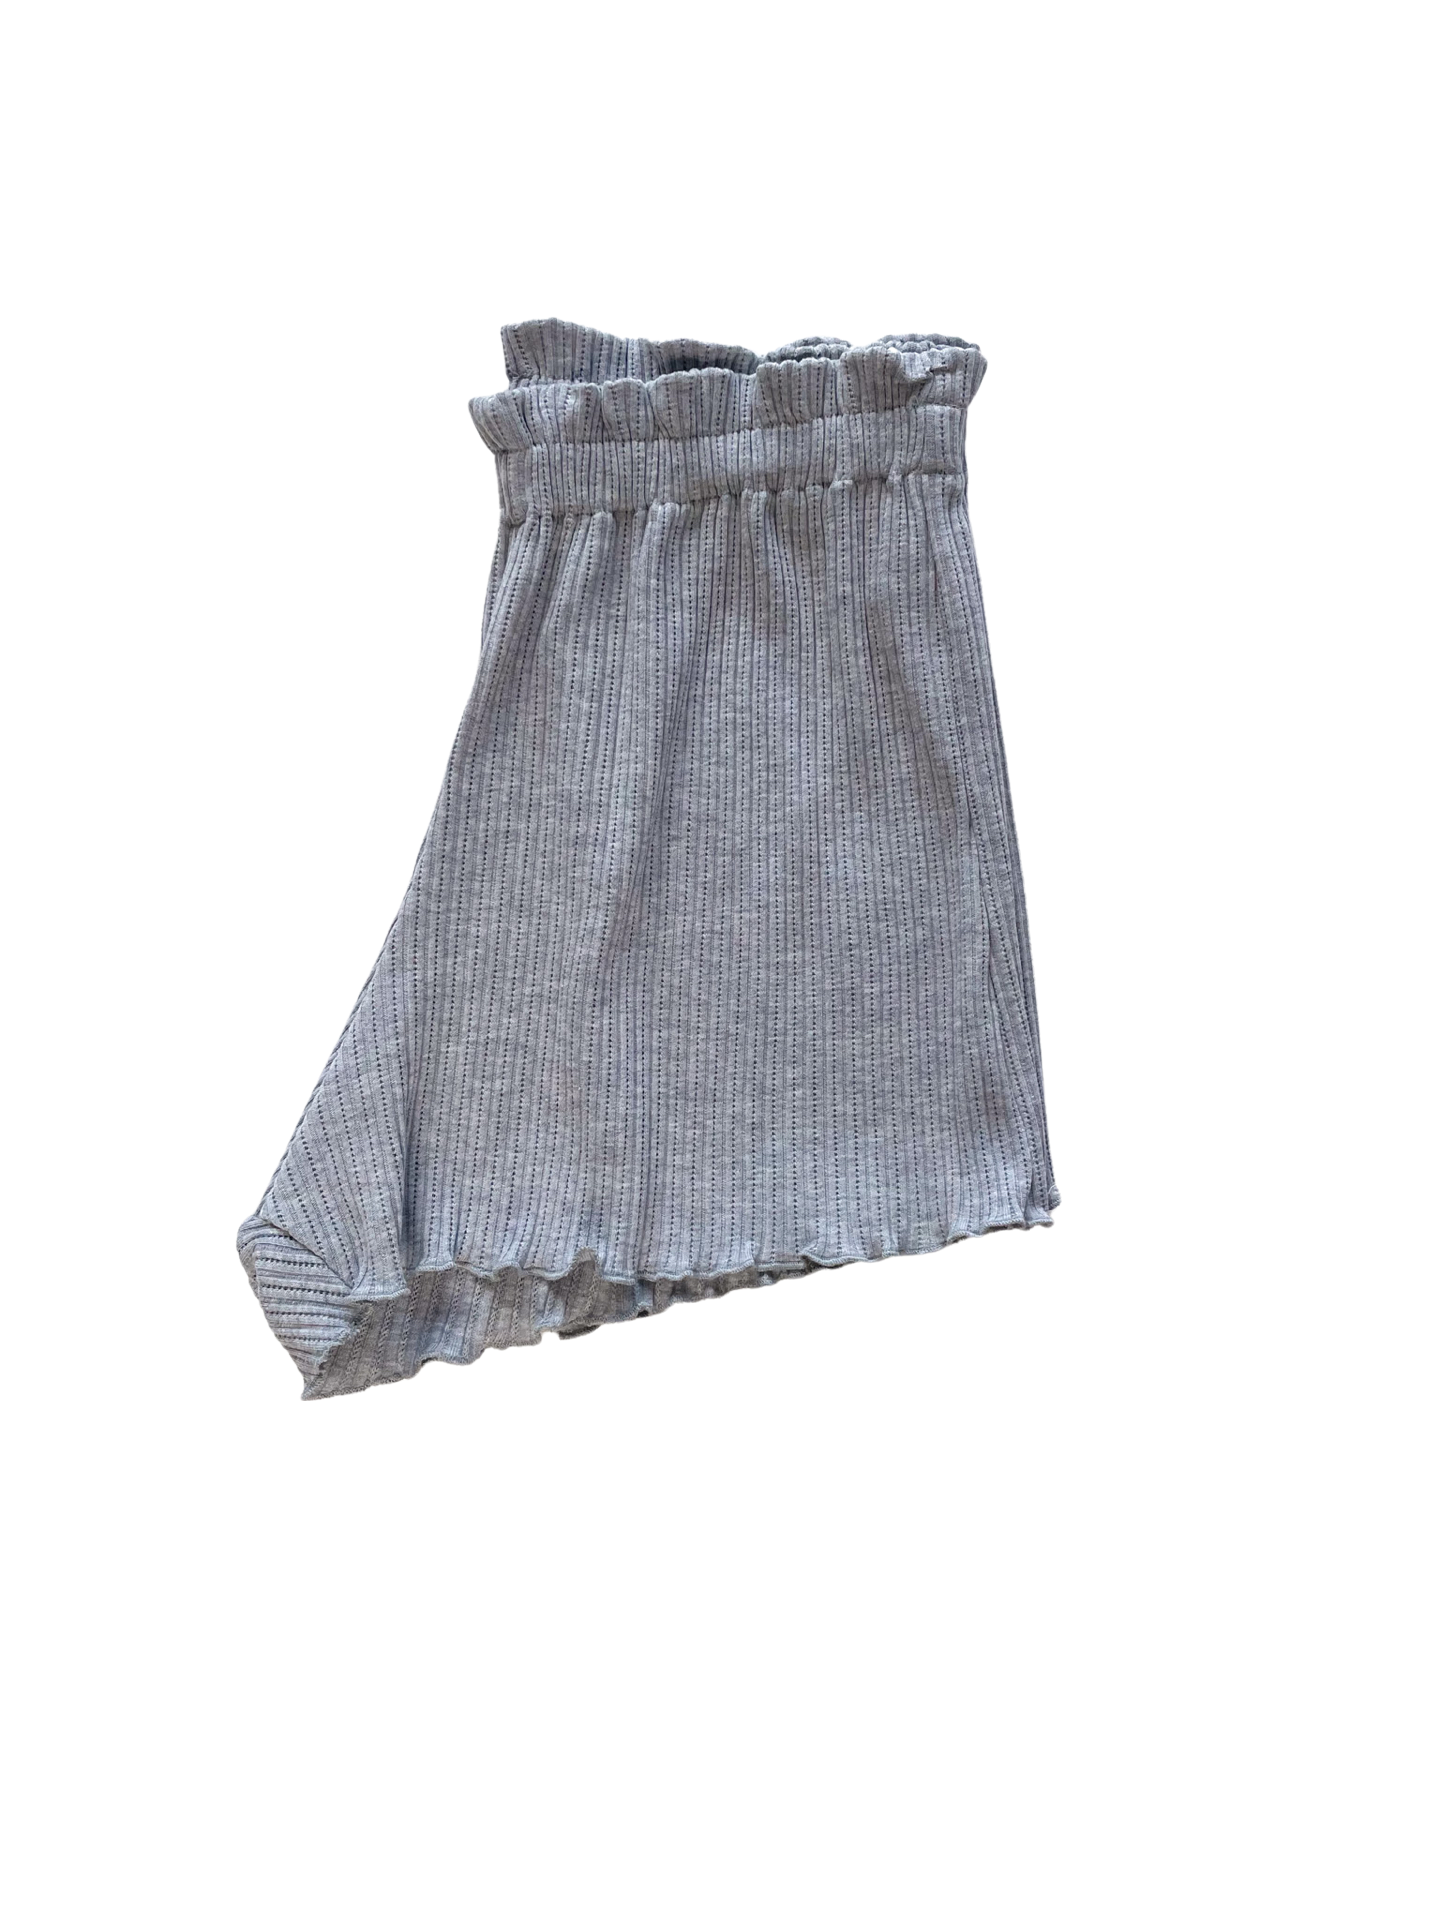 Pointoille ruffle shorts / melange grey